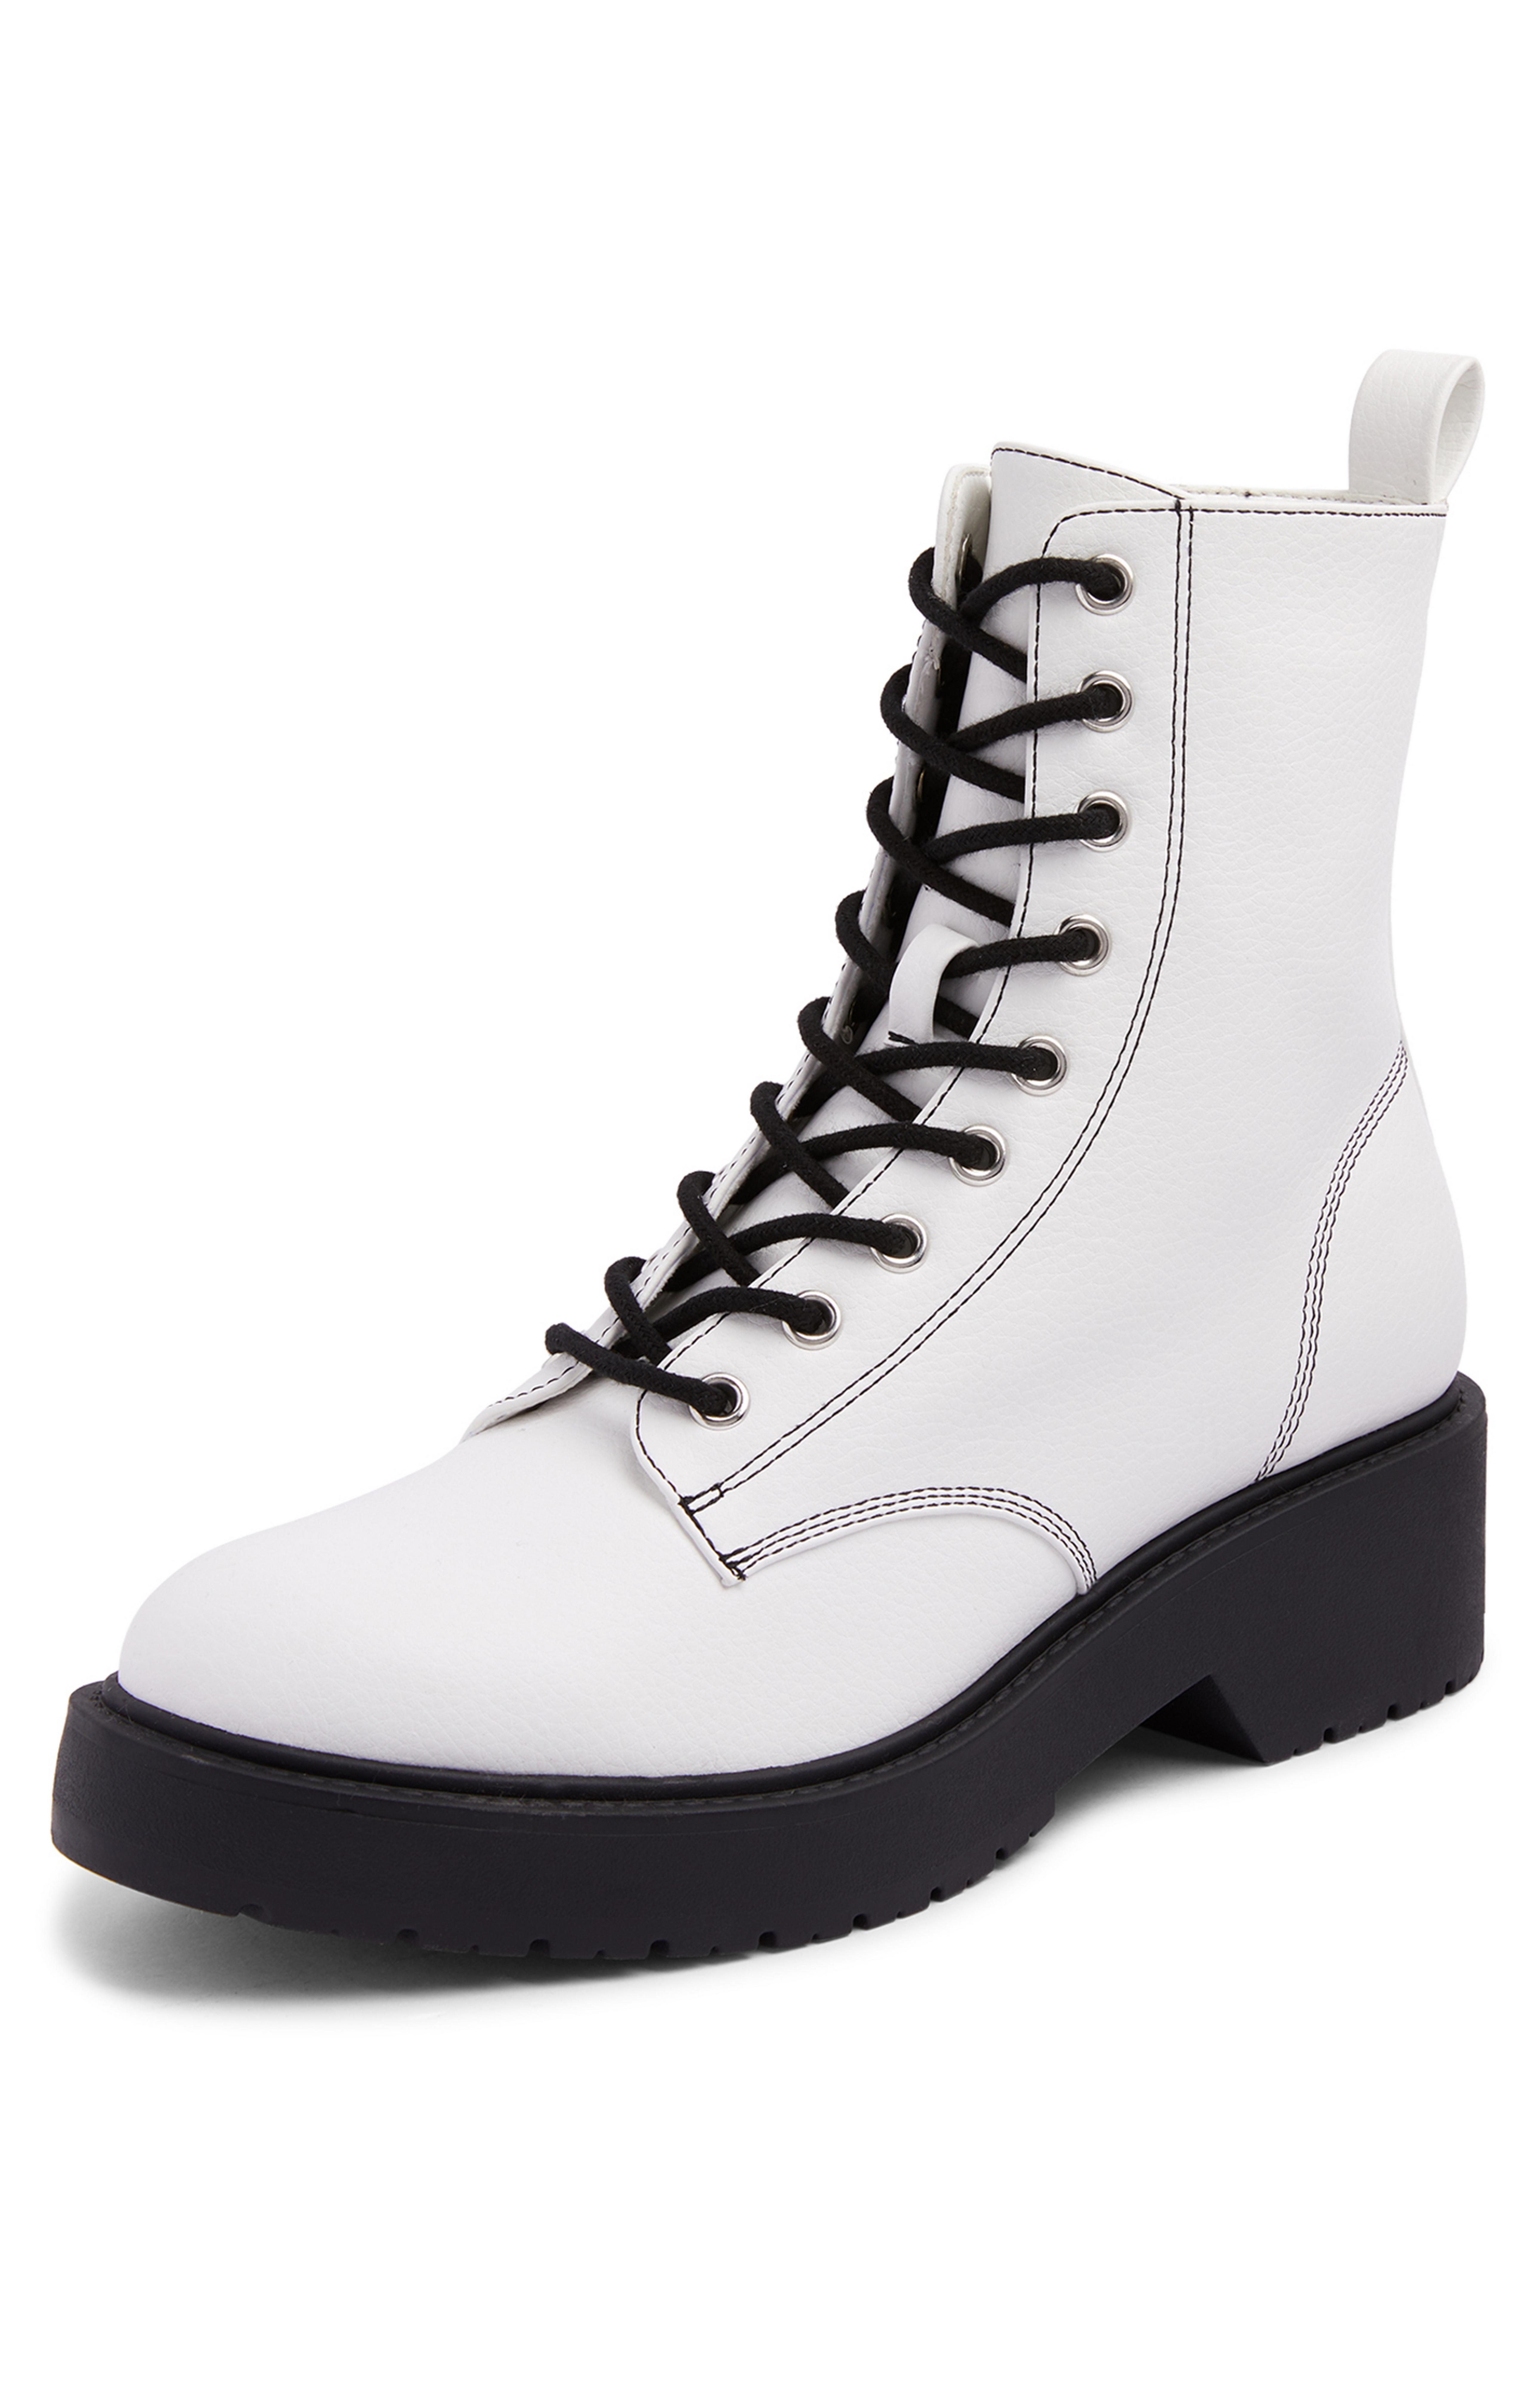 Botines blancos con cordones en contraste y gruesa | Botas para mujer | Zapatos y botas para mujer | Nuestra de moda femenina | Todos los productos Primark Primark España